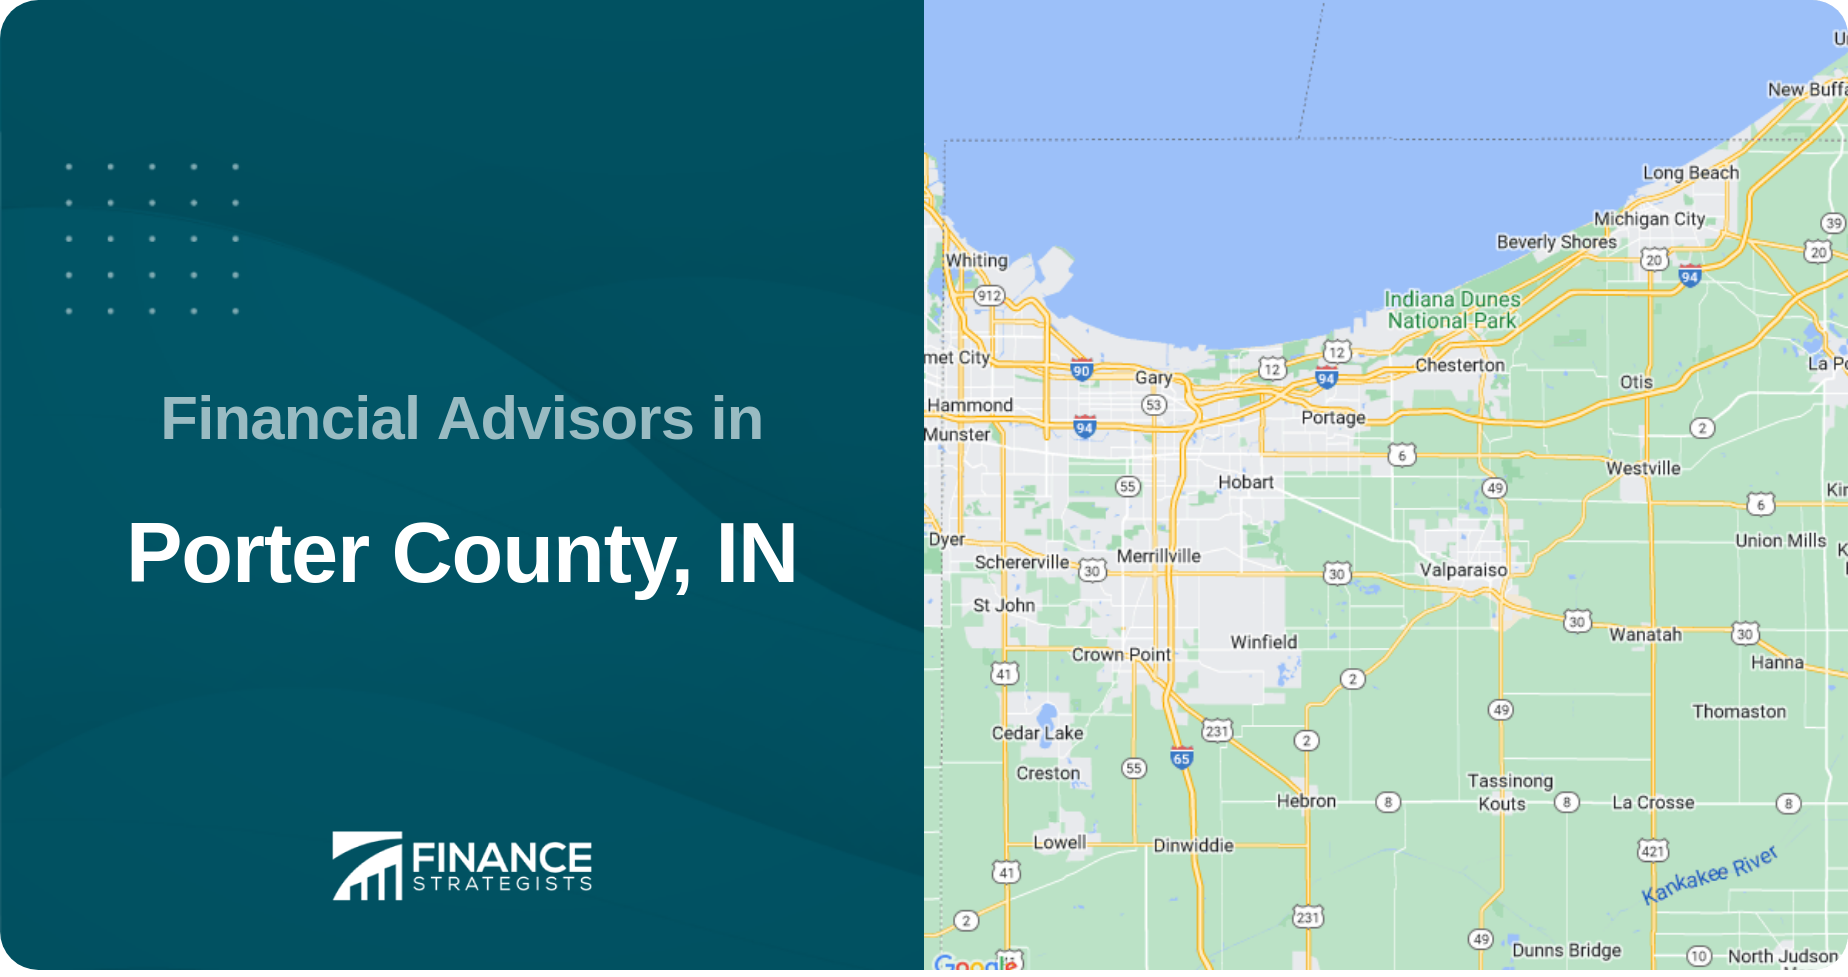 Financial Advisors in Porter County, IN